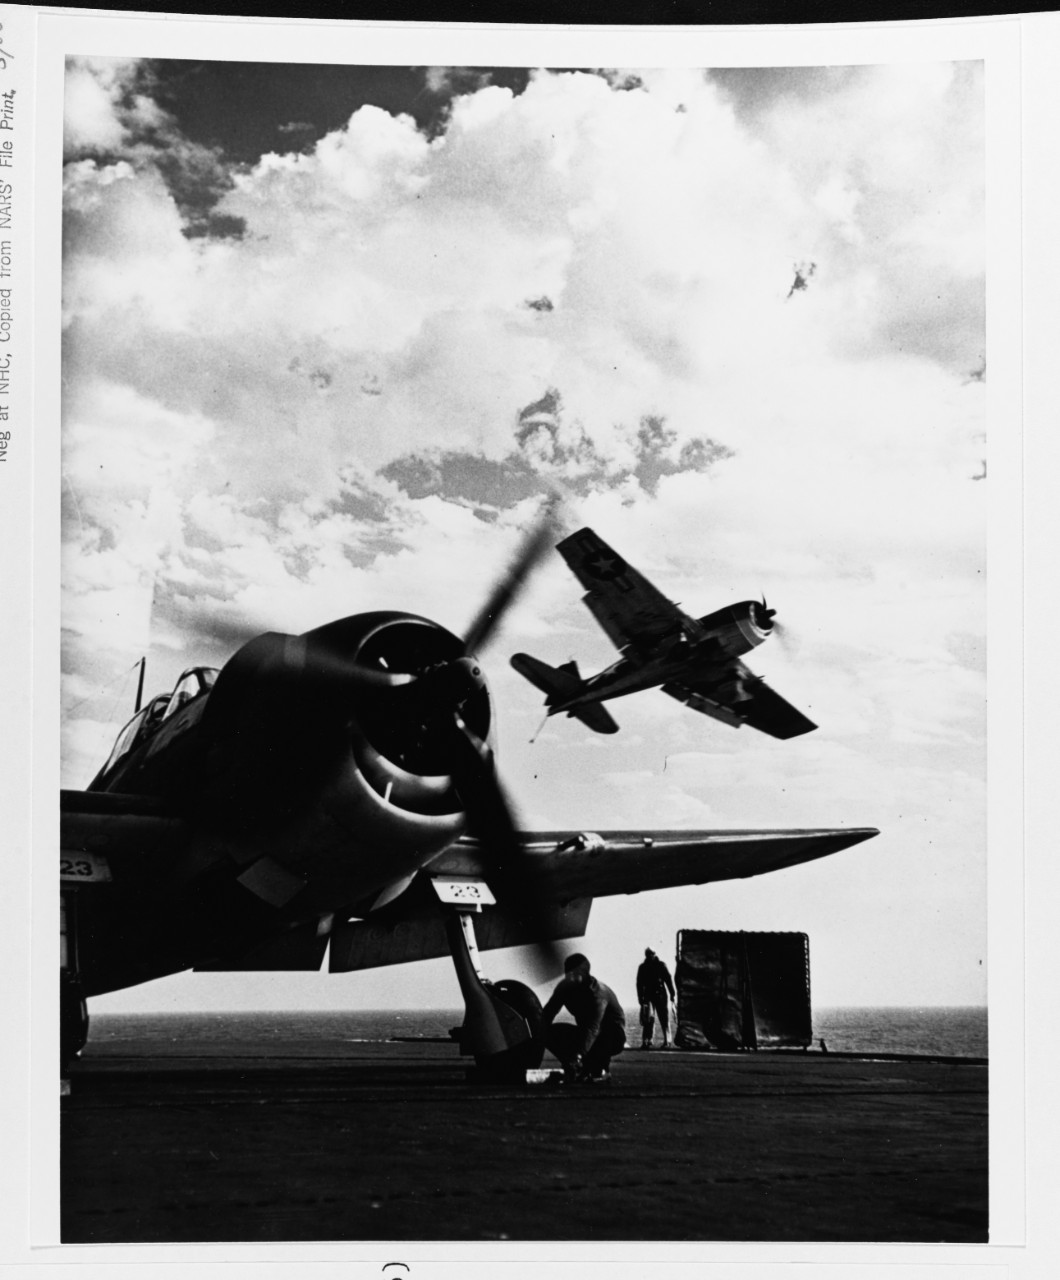 Grumman F6F-3 "Hellcat" fighter